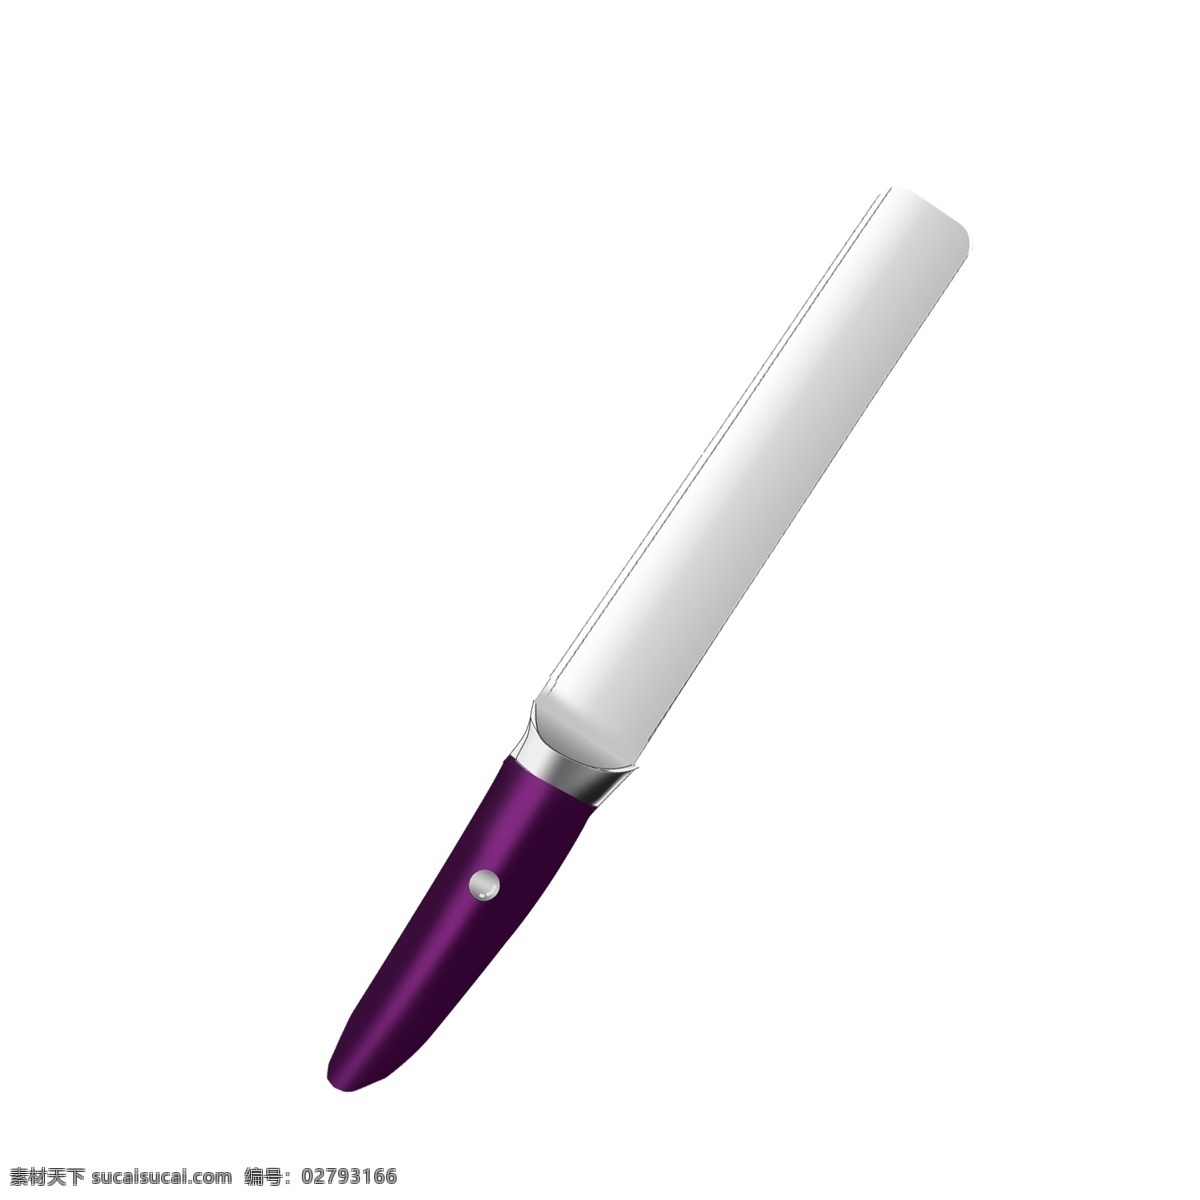 高雅 紫色 西瓜刀 水果刀 视觉 造型 时尚 铁质